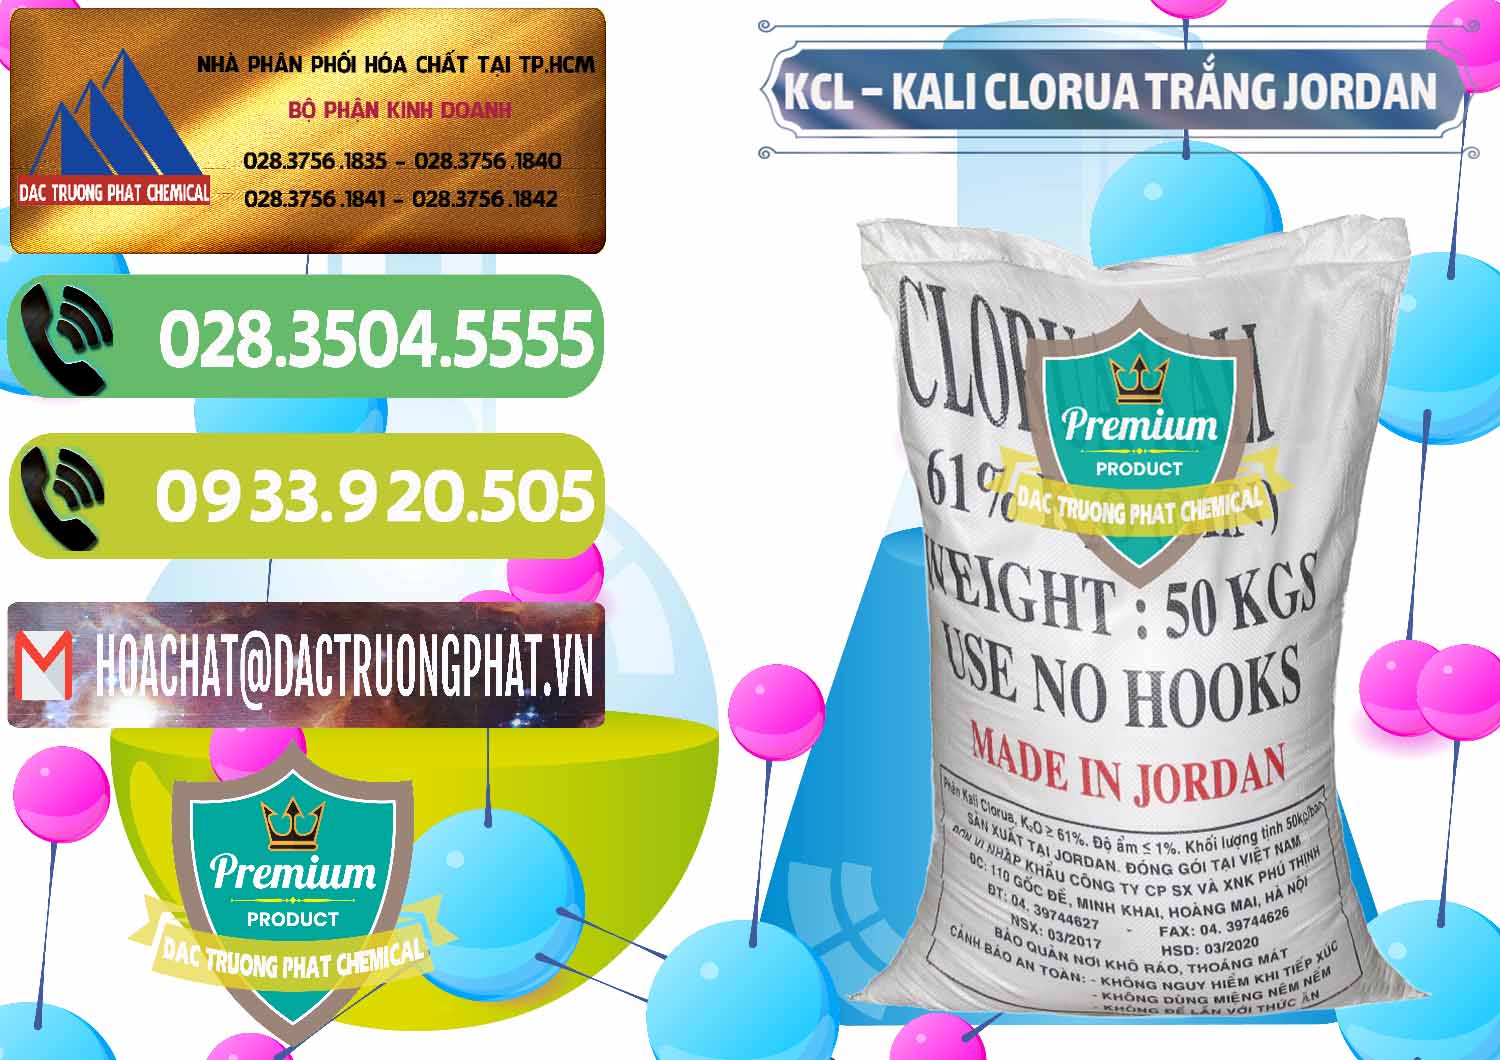 Công ty chuyên cung cấp và bán KCL – Kali Clorua Trắng Jordan - 0088 - Công ty phân phối _ cung cấp hóa chất tại TP.HCM - hoachatmientay.vn